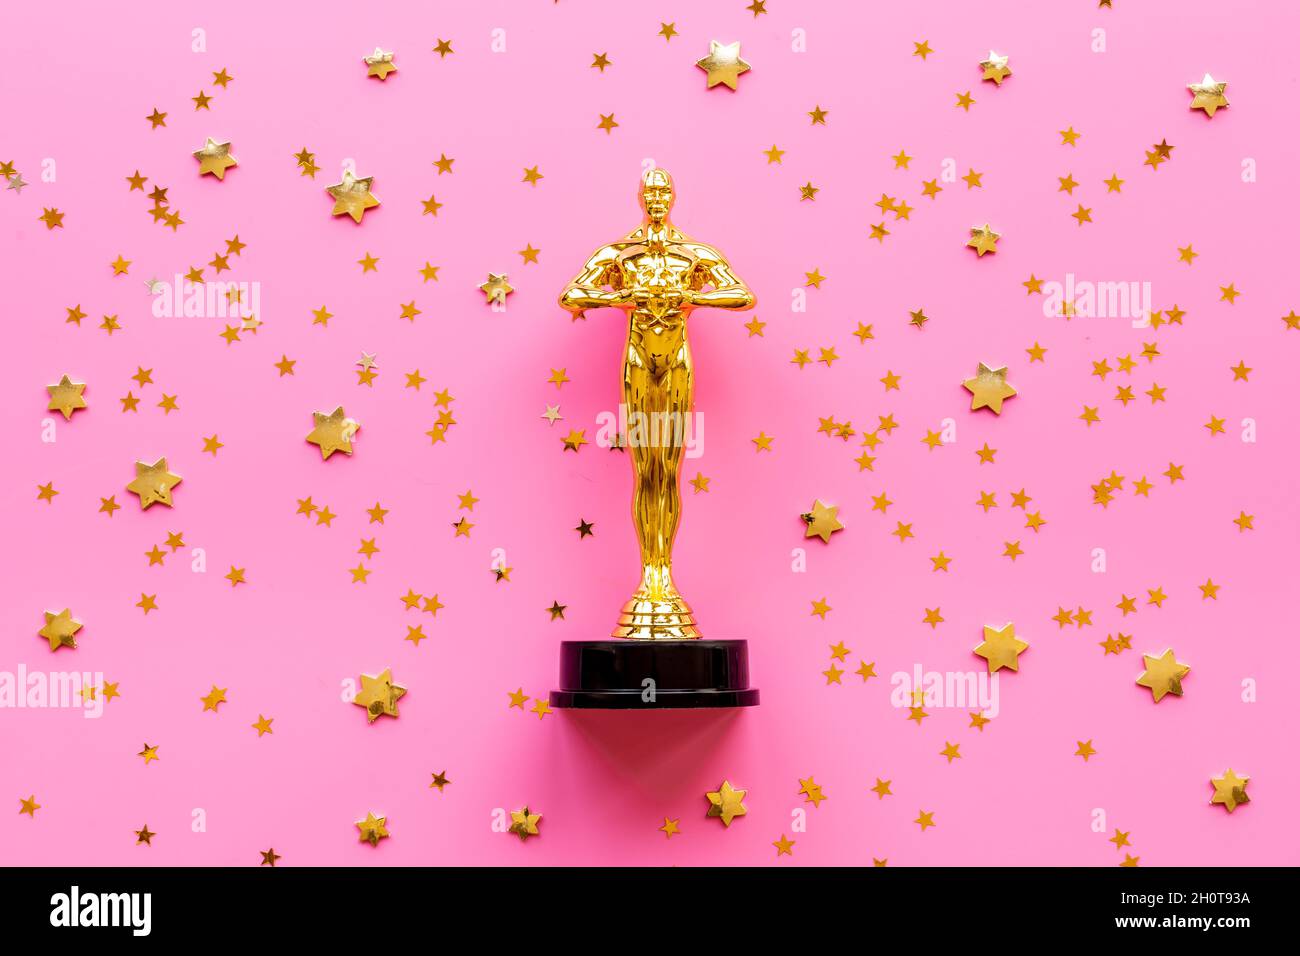 Statue du Golden film Award - vainqueur de l'industrie cinématographique Banque D'Images